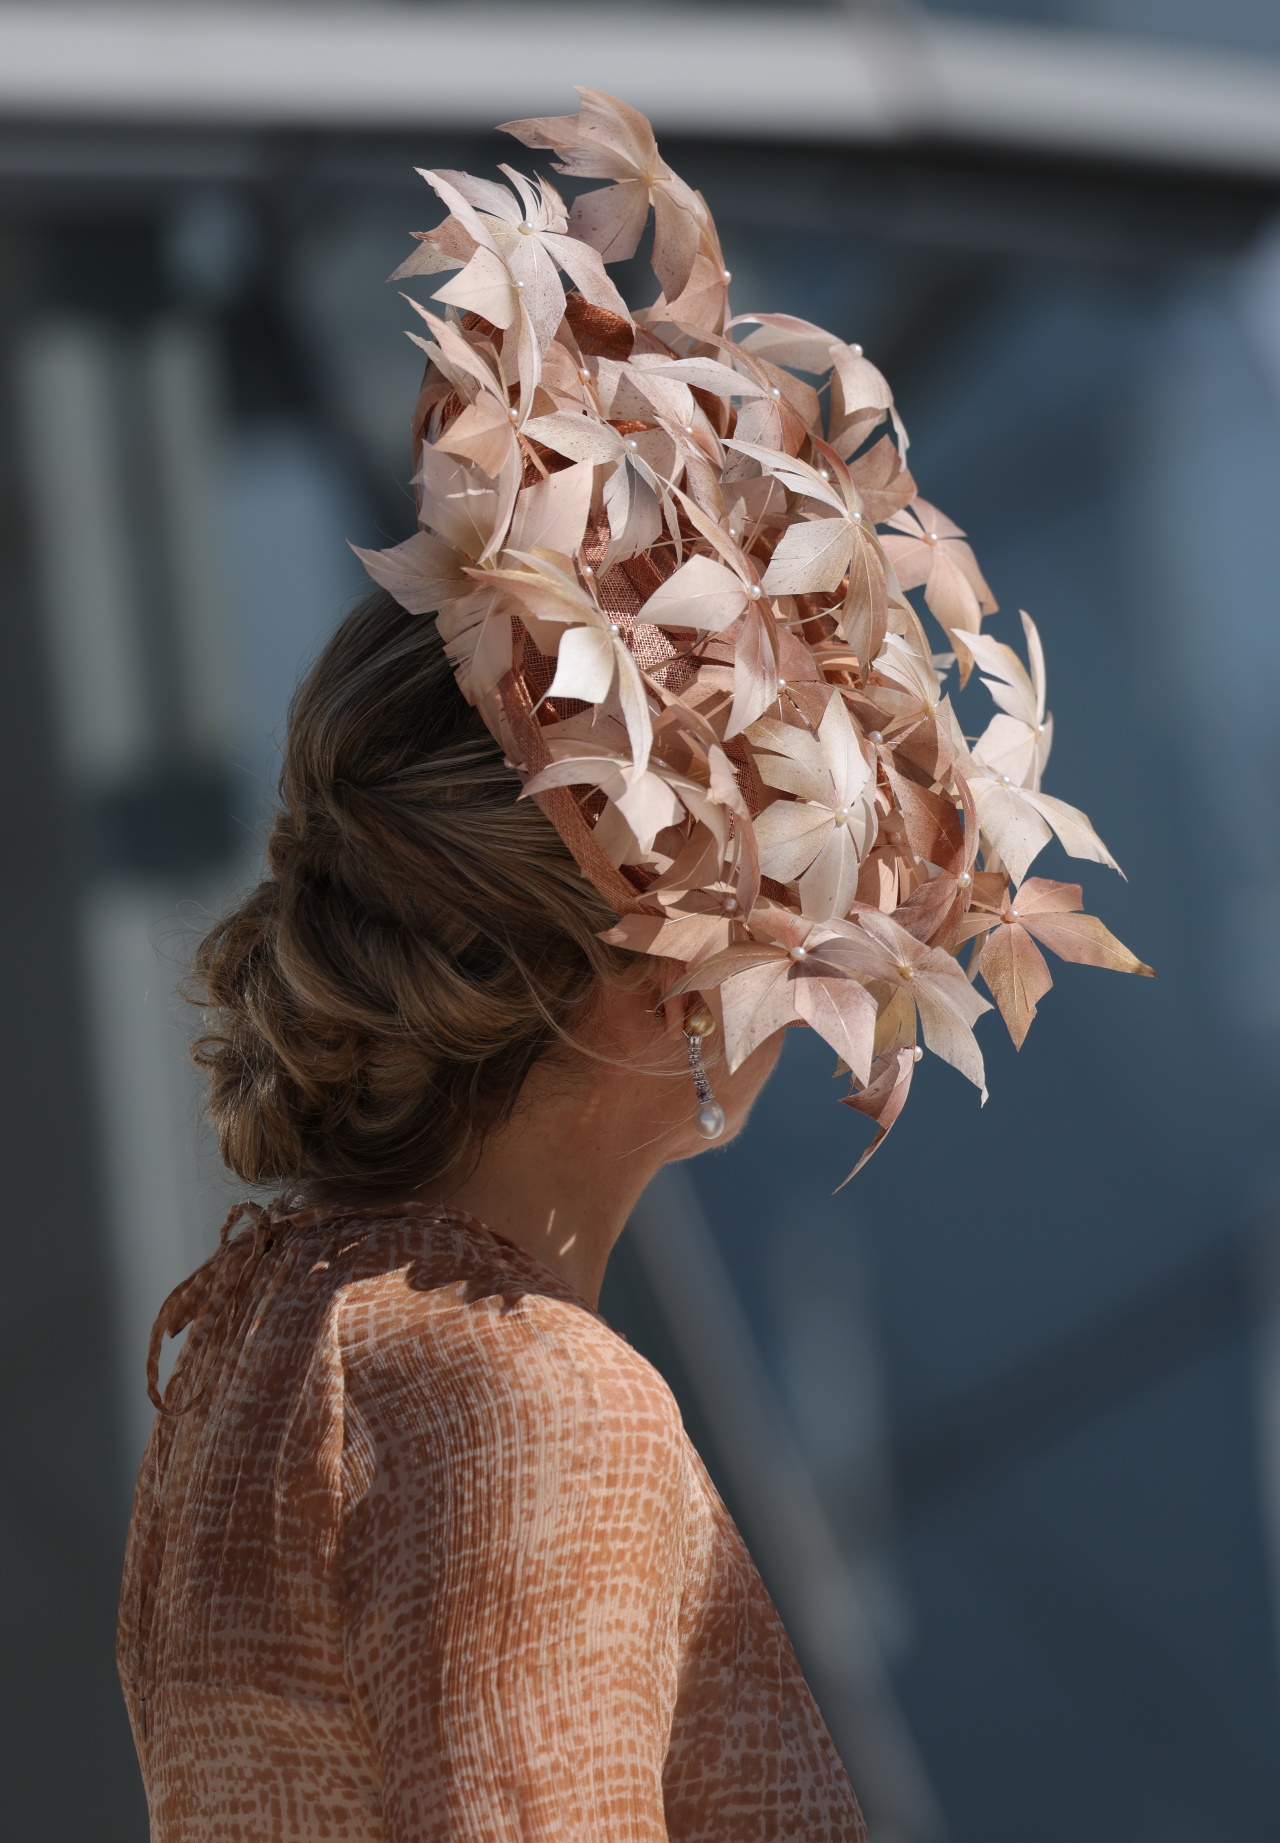 <p><strong>Кралицата на Нидерландия Максима</strong></p>

<p>Нидерландската кралица Максима впечатли с шармантна шапка по време на Royal Ascot във Великобритания през 2019 г. Творението е бледо розова шапка с листа и малки перли за акцент.</p>